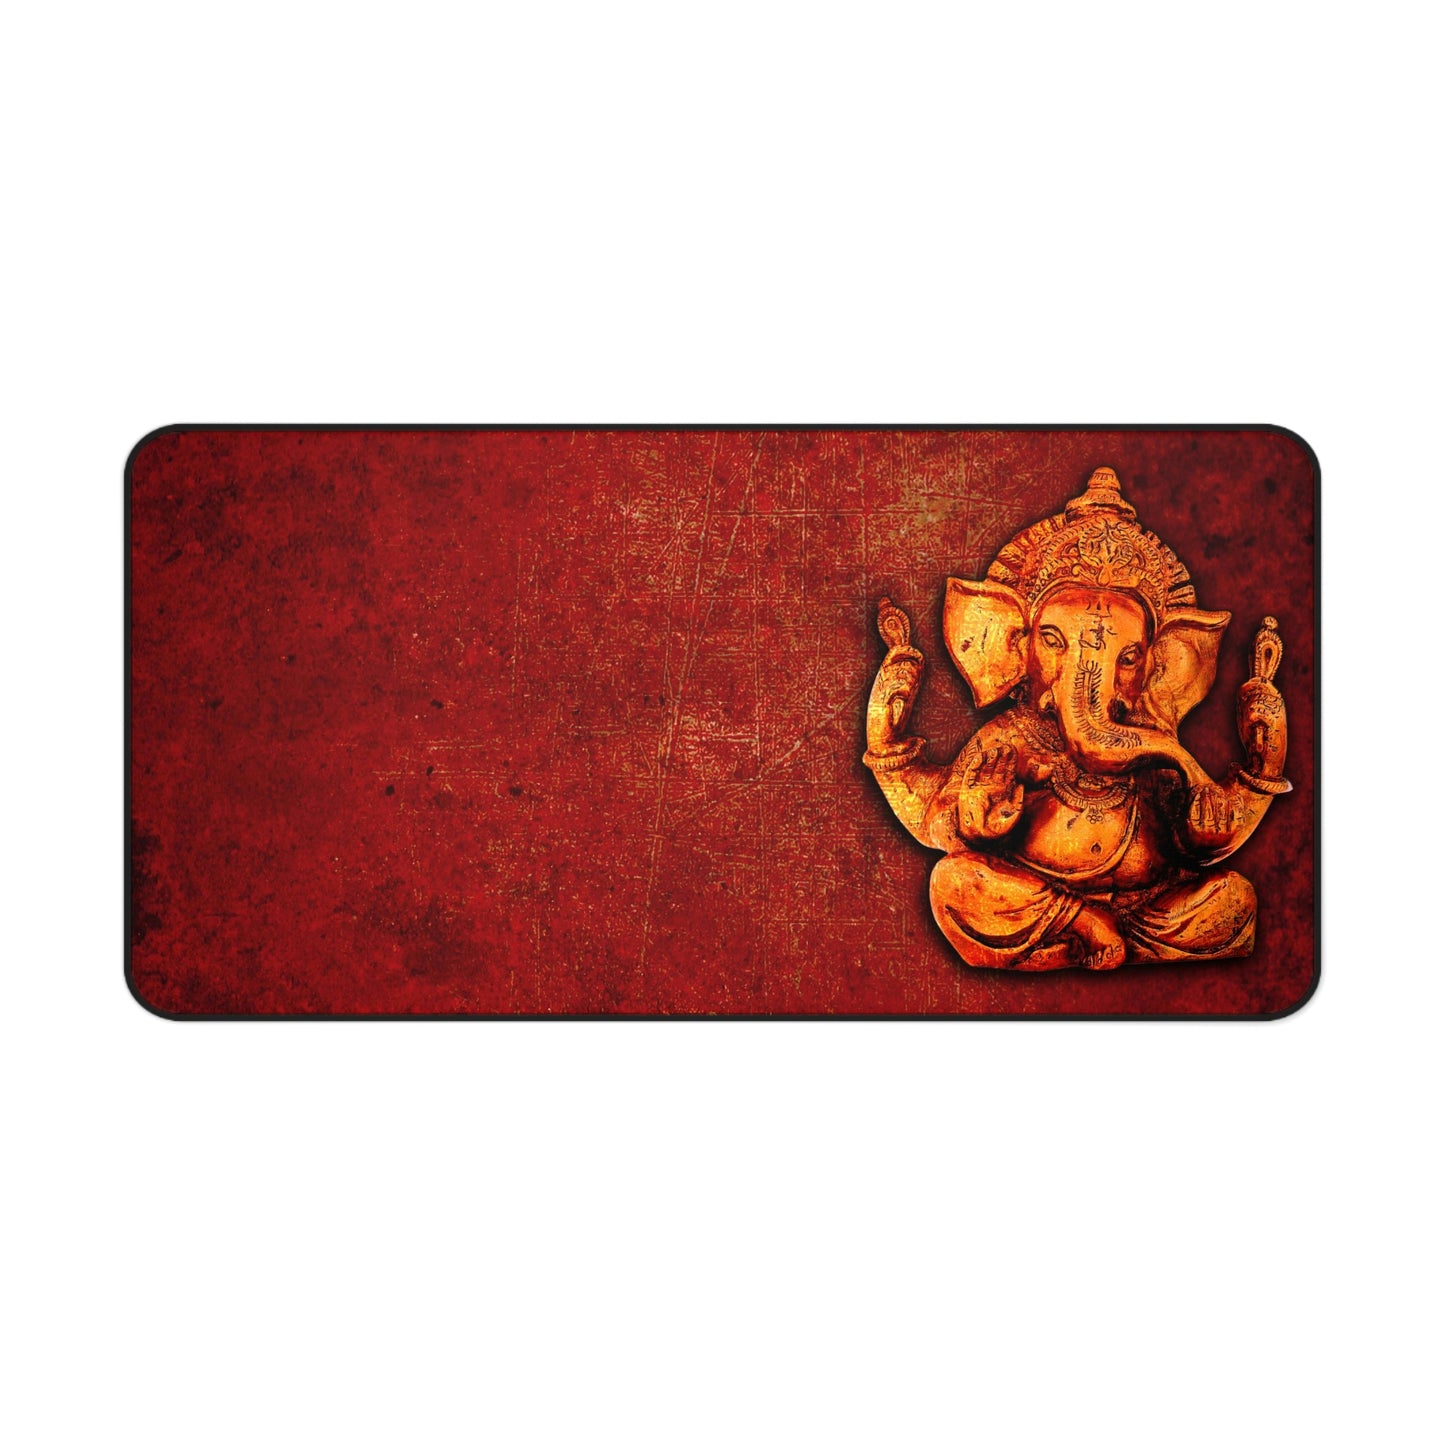 Gold Ganesha on Lava Red Background Print on Neoprene Desk Mat 15.5 by 31